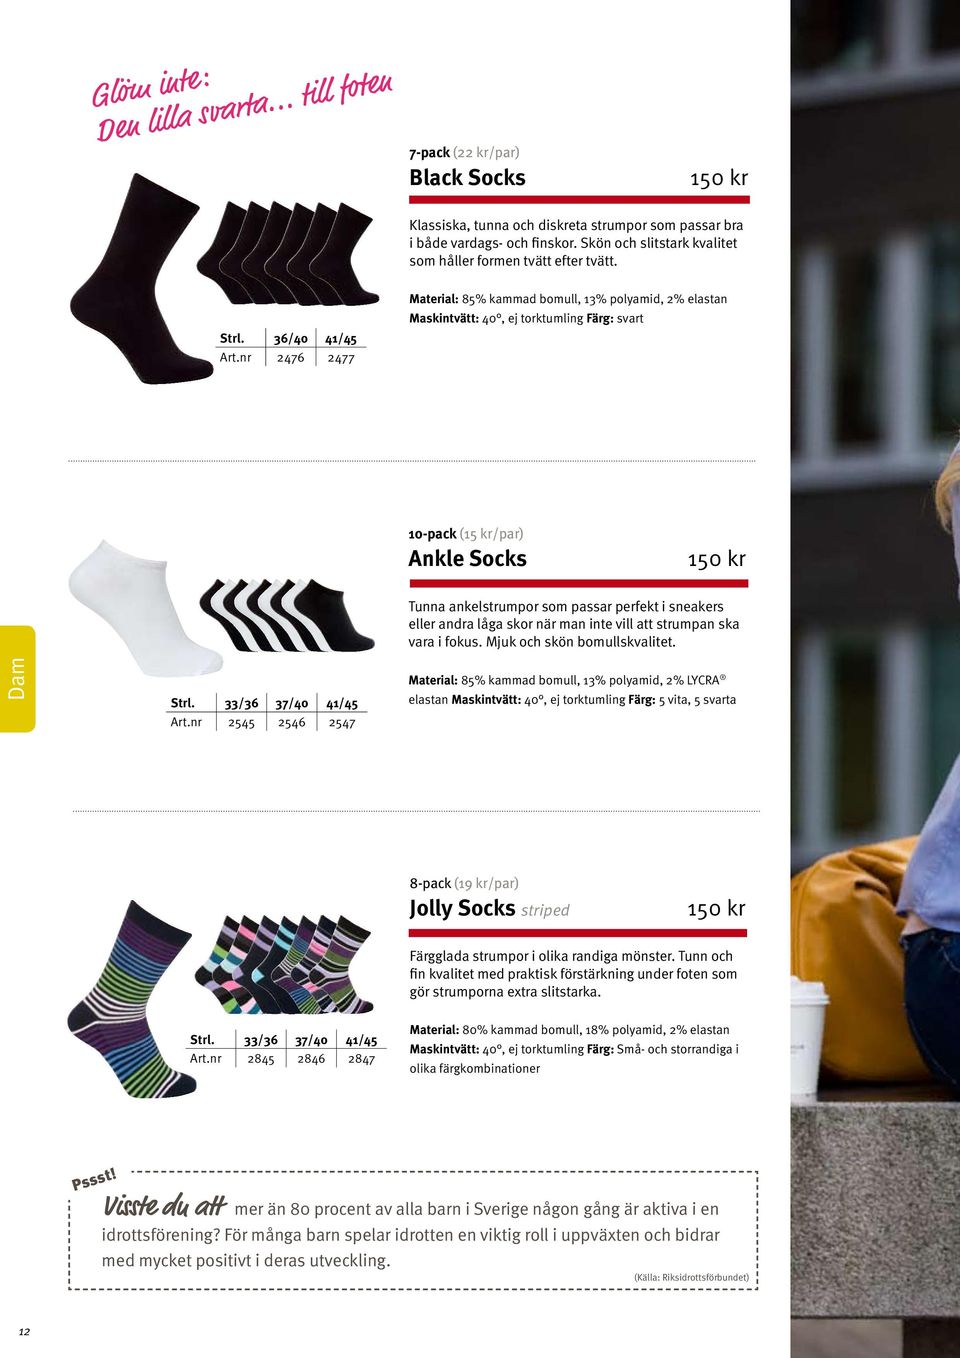 nr 2476 2477 Material: 85% kammad bomull, 13% polyamid, 2% elastan Maskintvätt: 40, ej torktumling Färg: svart 10-pack (15 kr/par) Ankle Socks Tunna ankelstrumpor som passar perfekt i sneakers eller